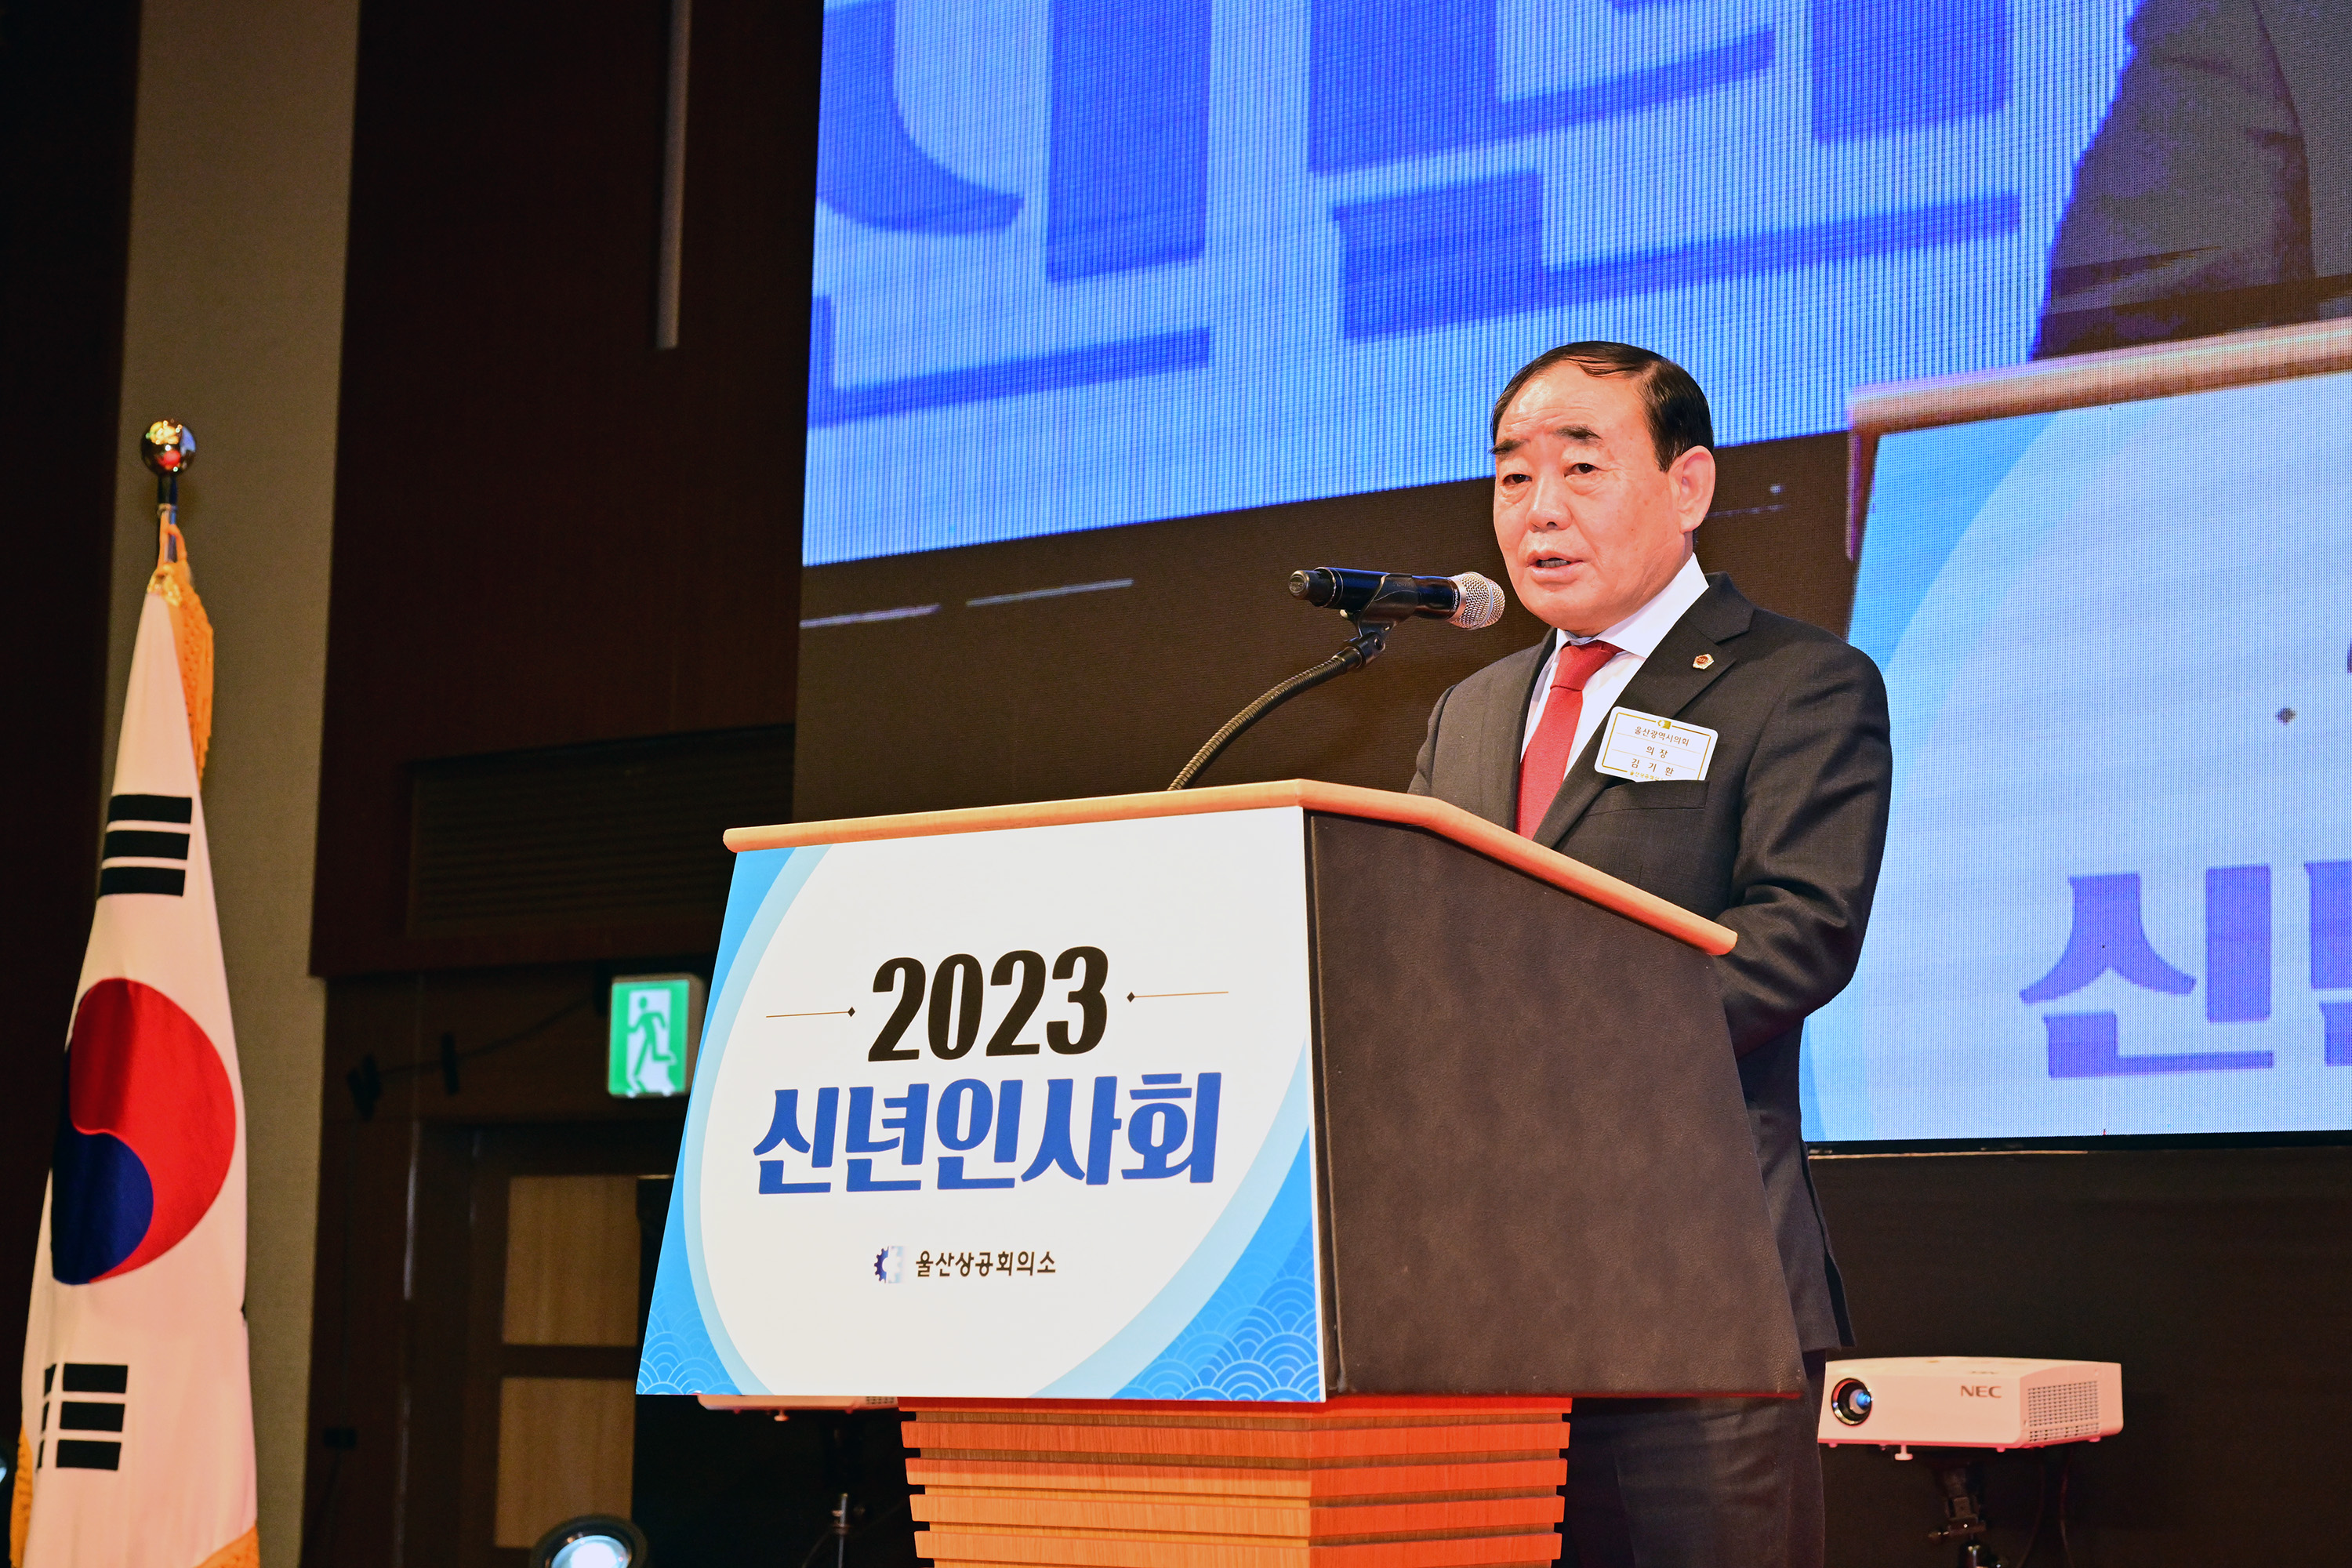 2023년 울산상공회의소 신년인사회6